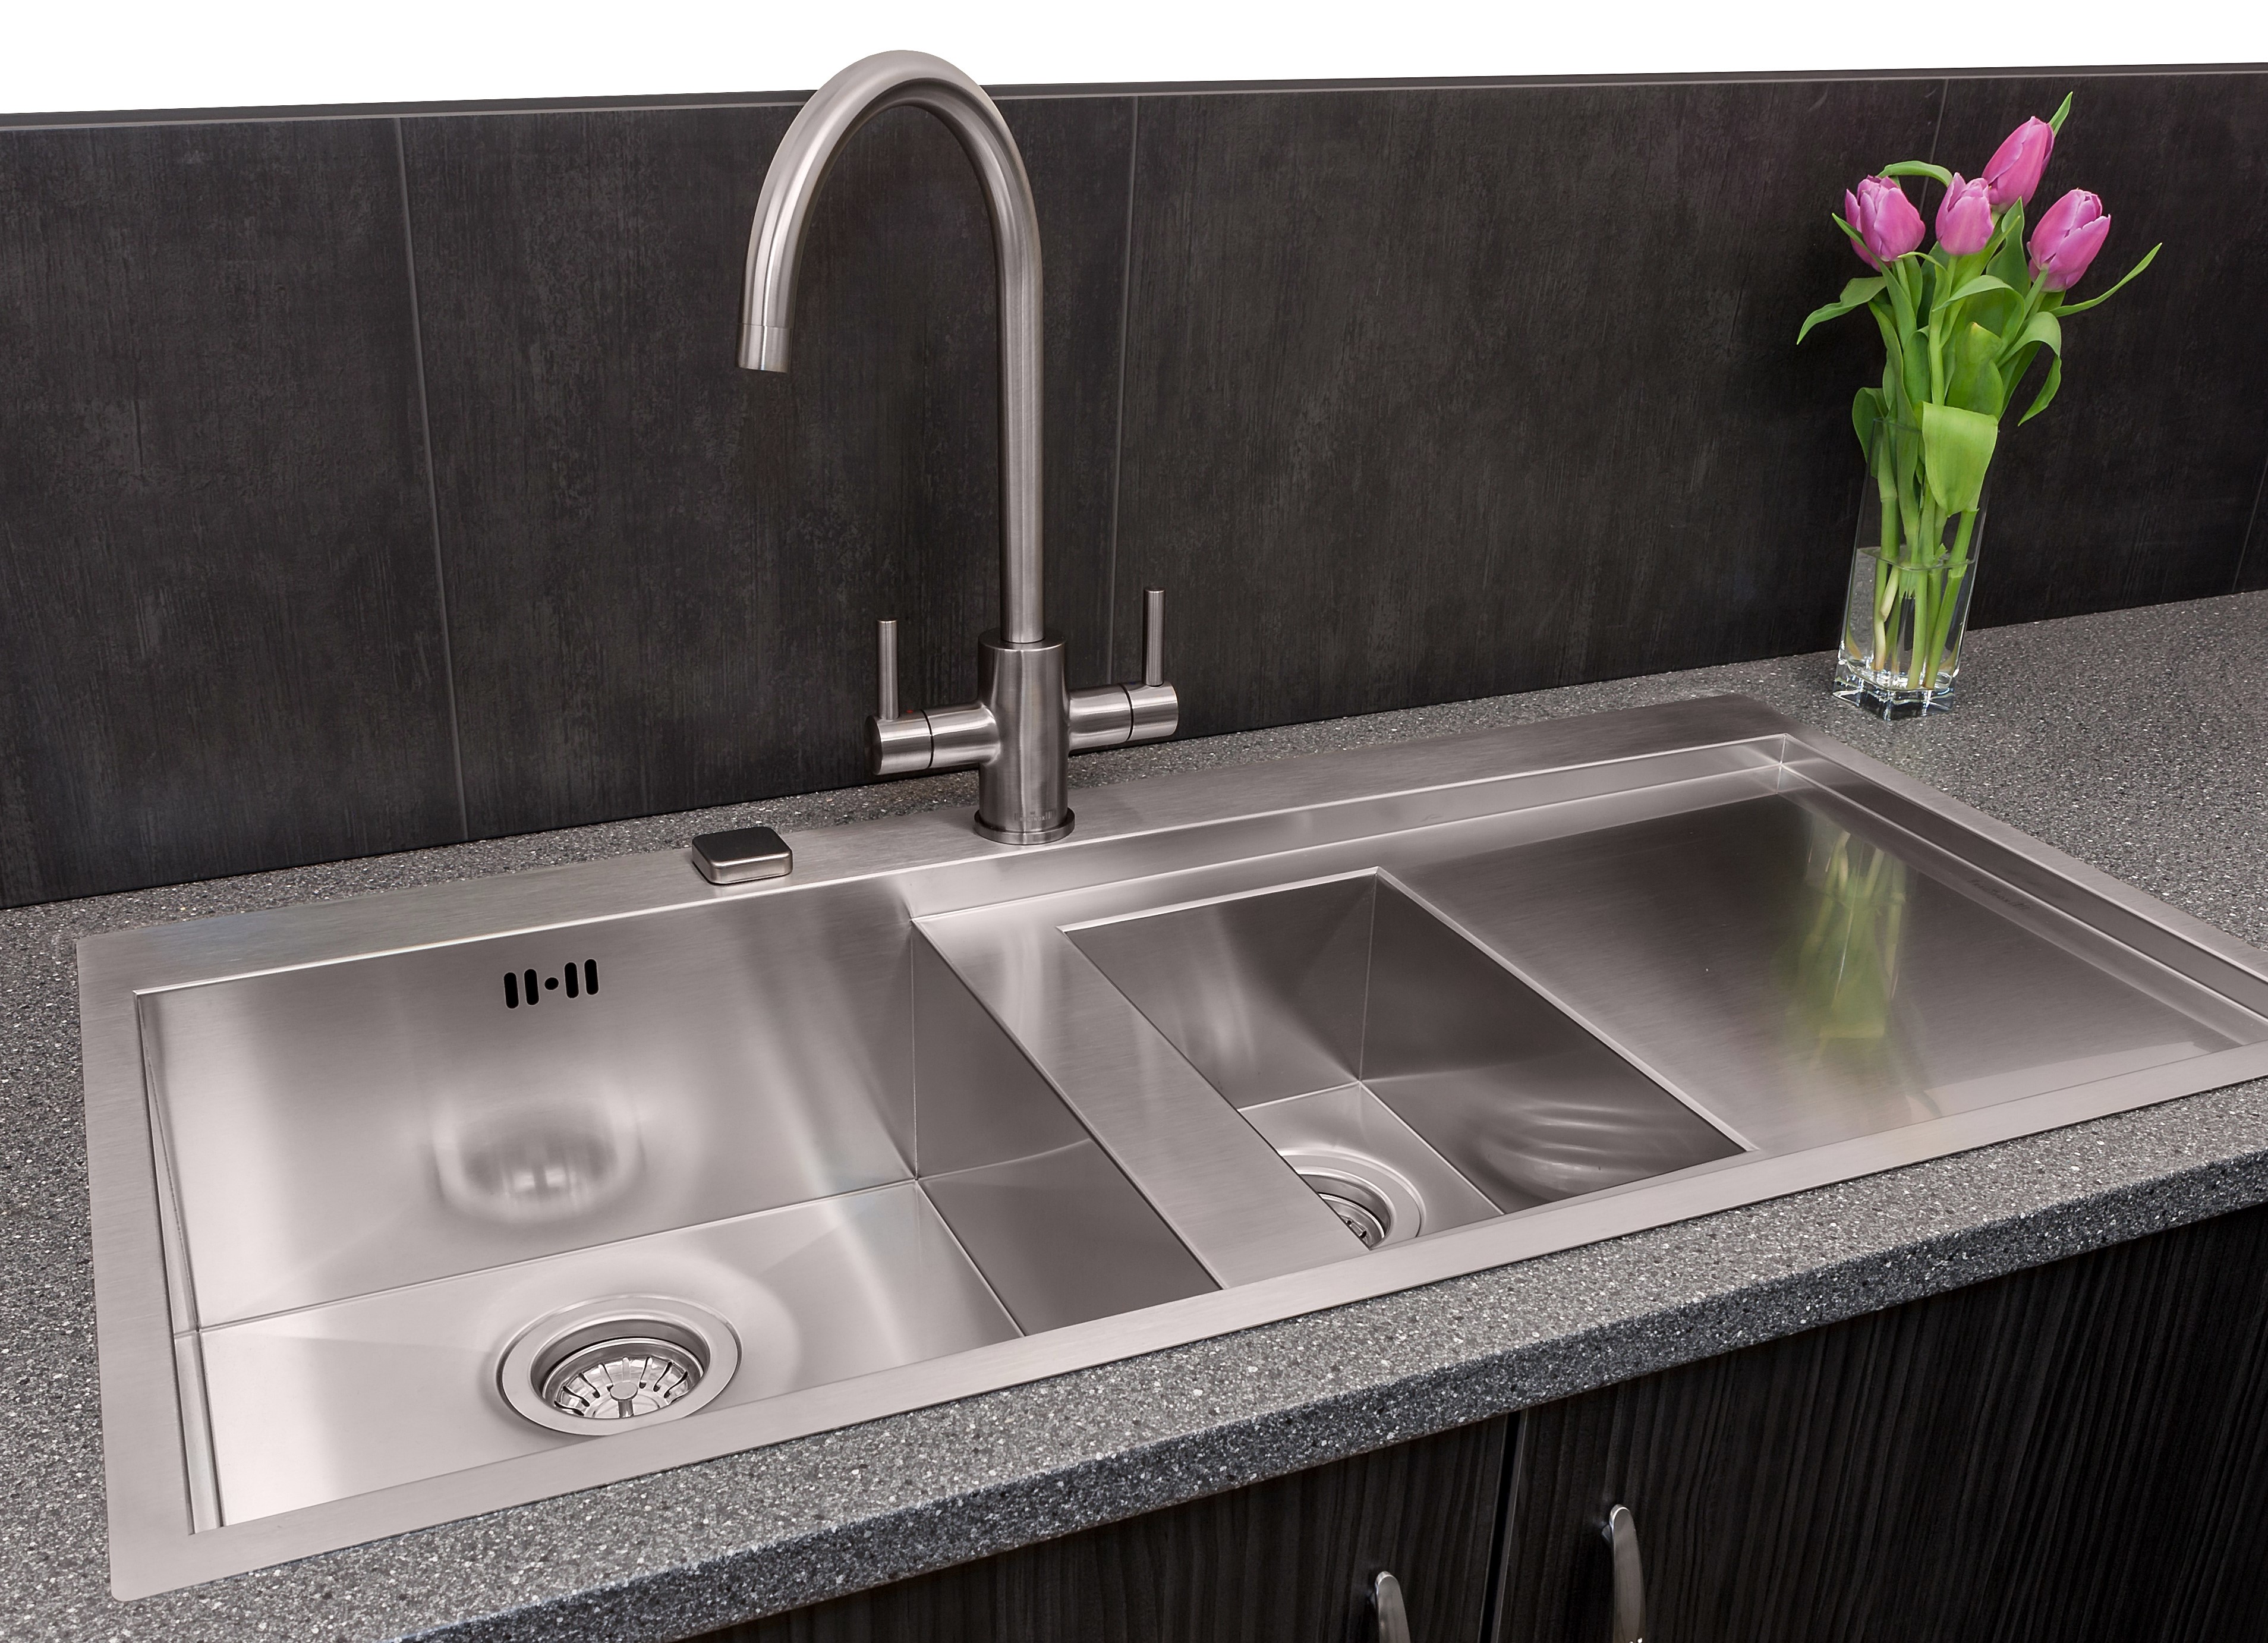 kitchen sink design contemporary design